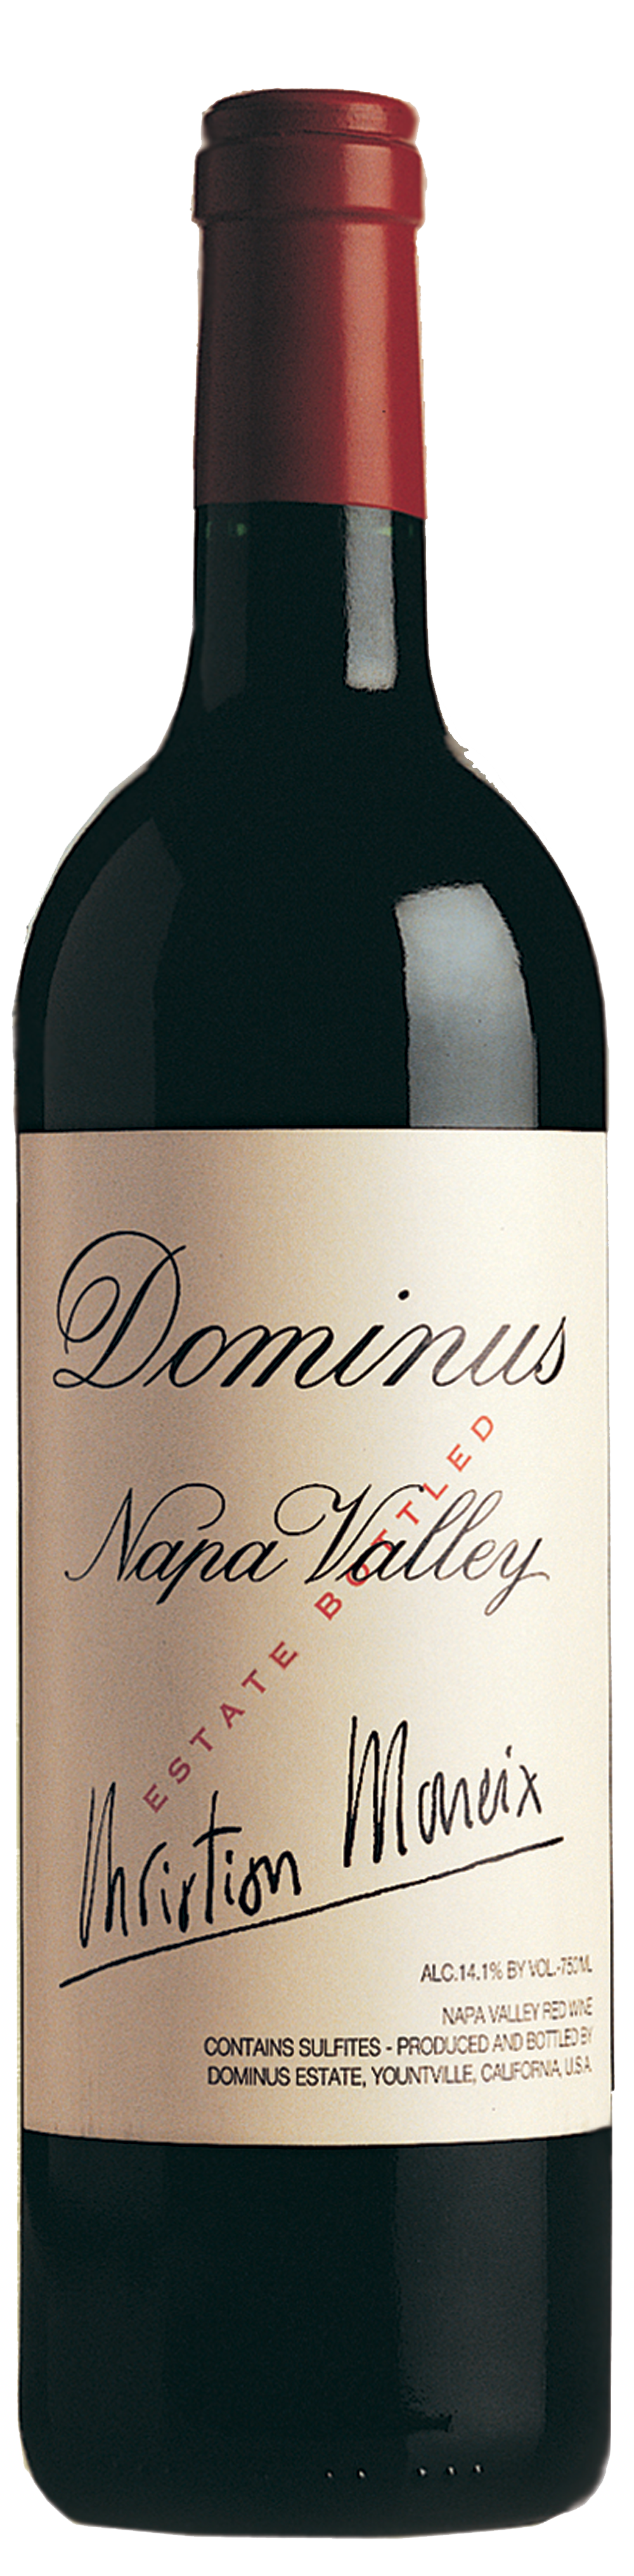 Bottle shot of 2003 Dominus